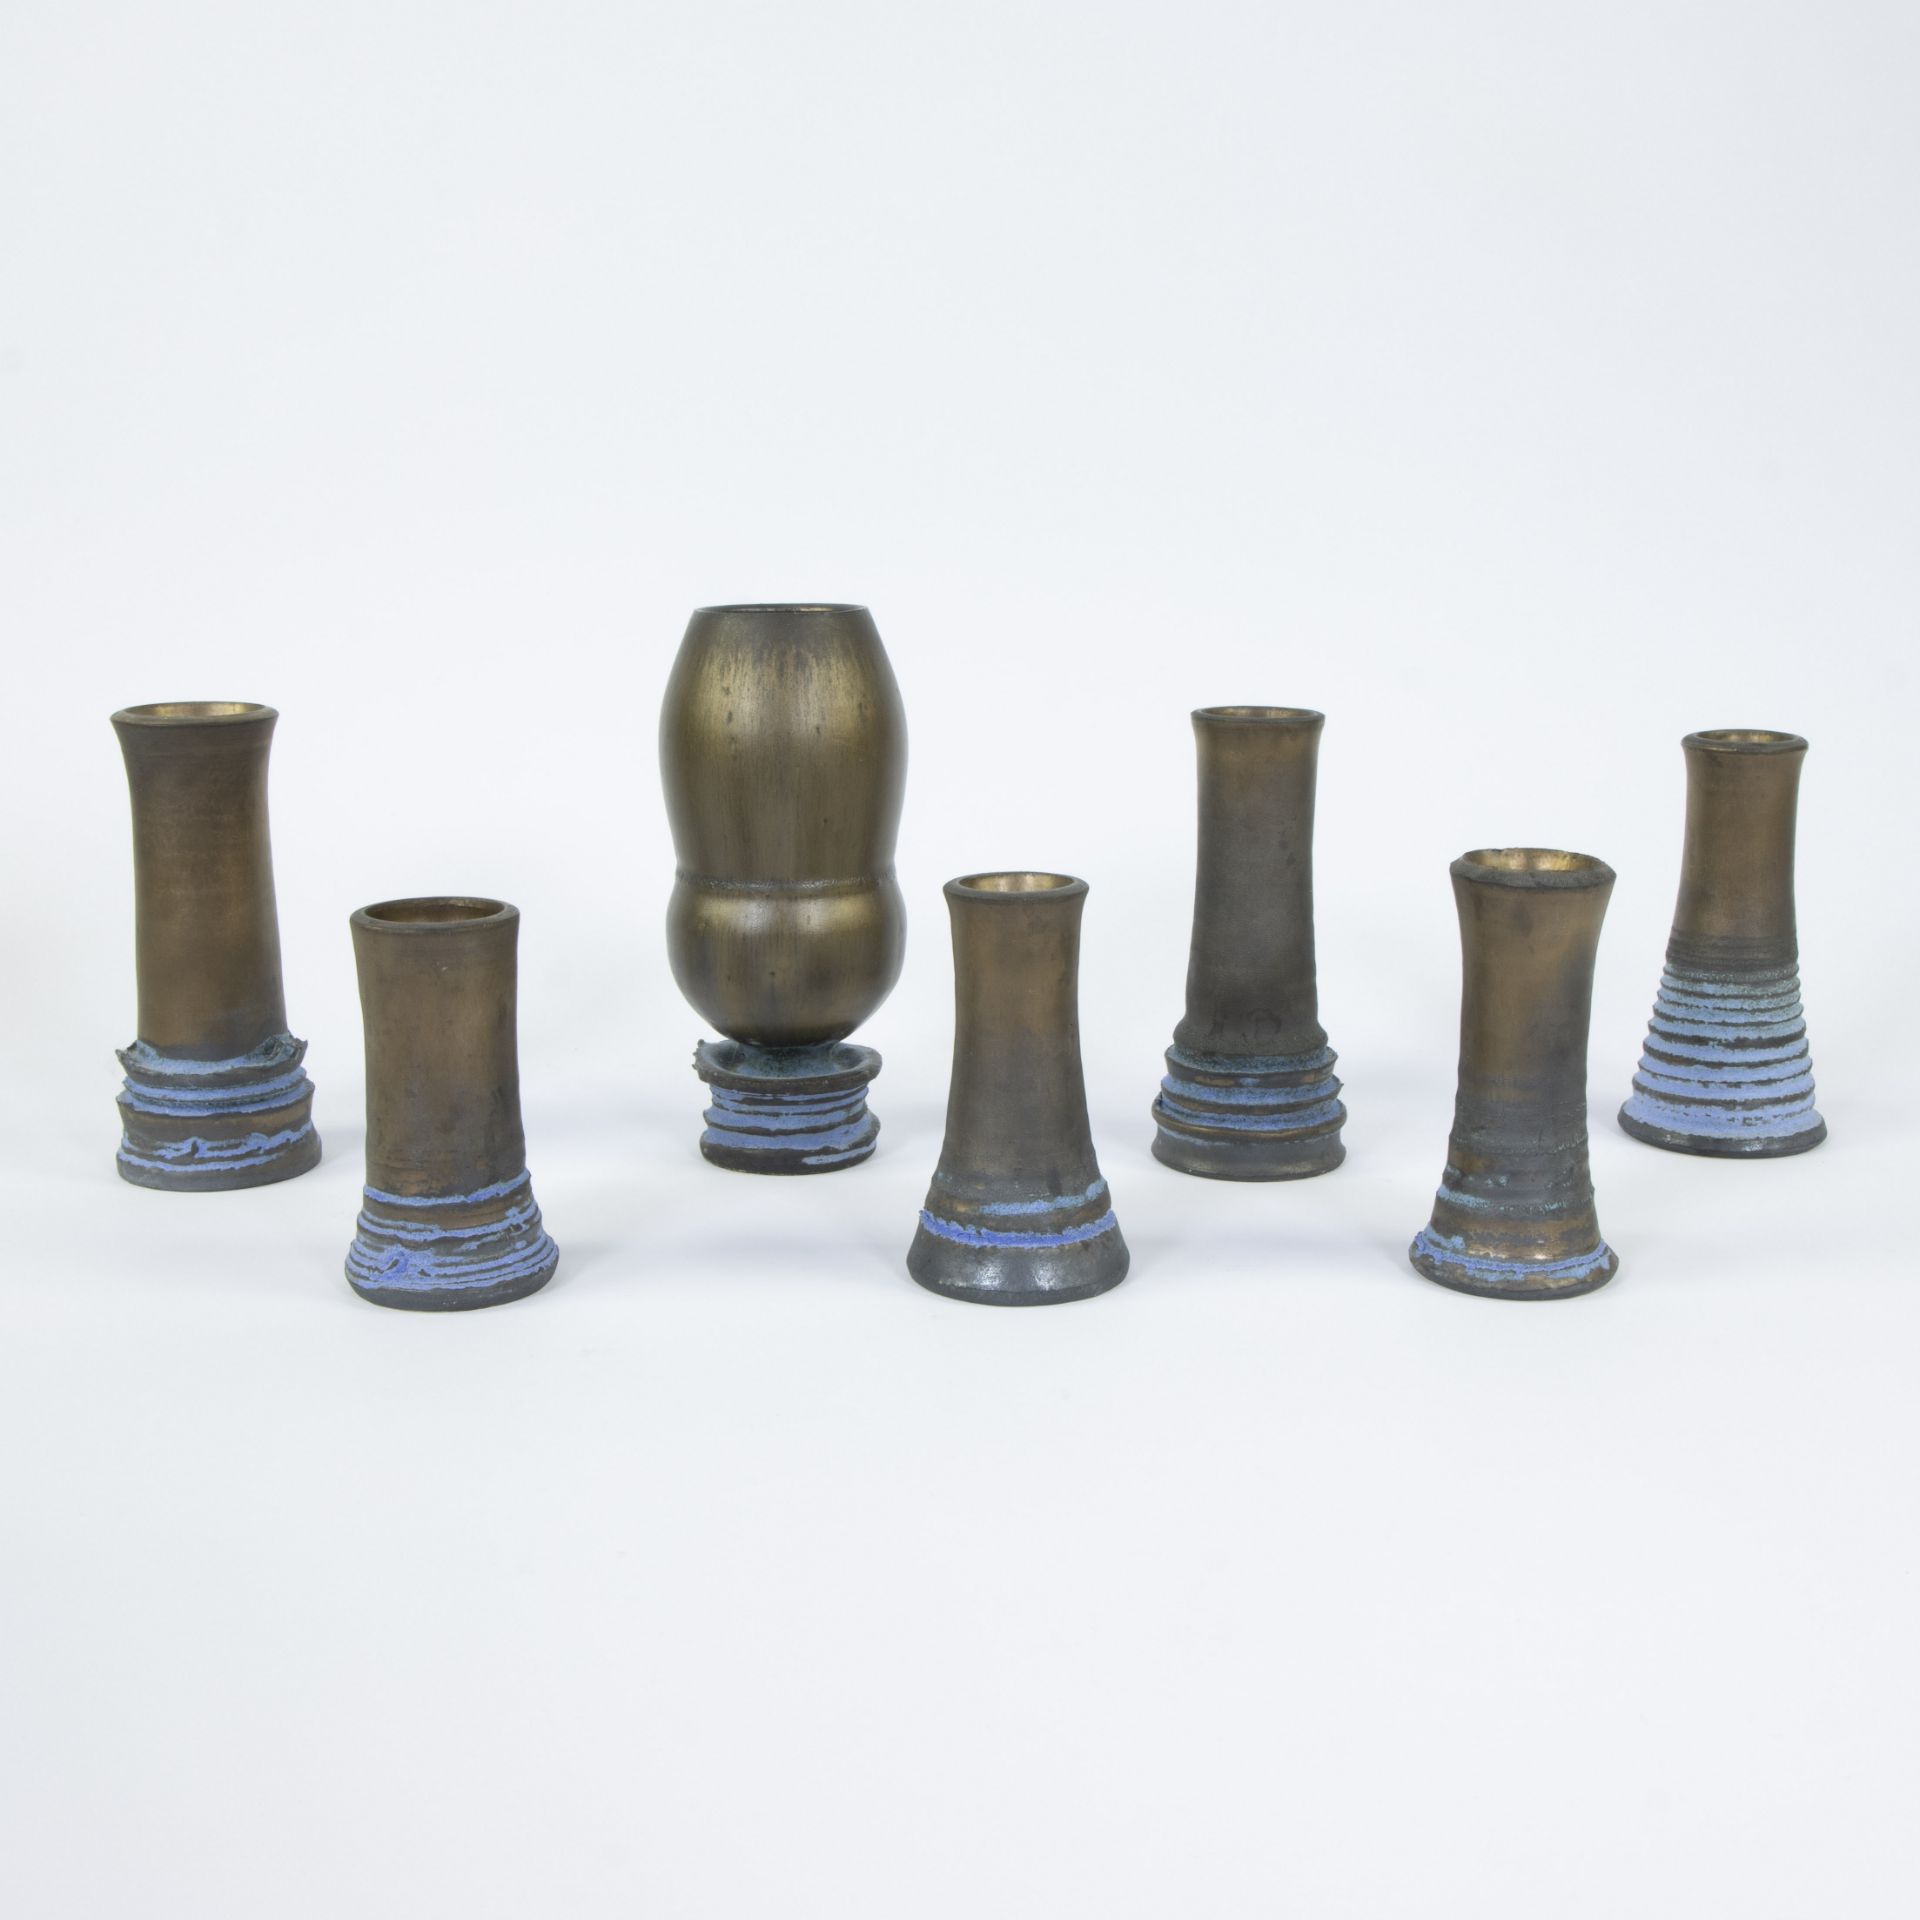 Frank STEYAERT (1953), 7 ceramic vases, signed - Image 3 of 5